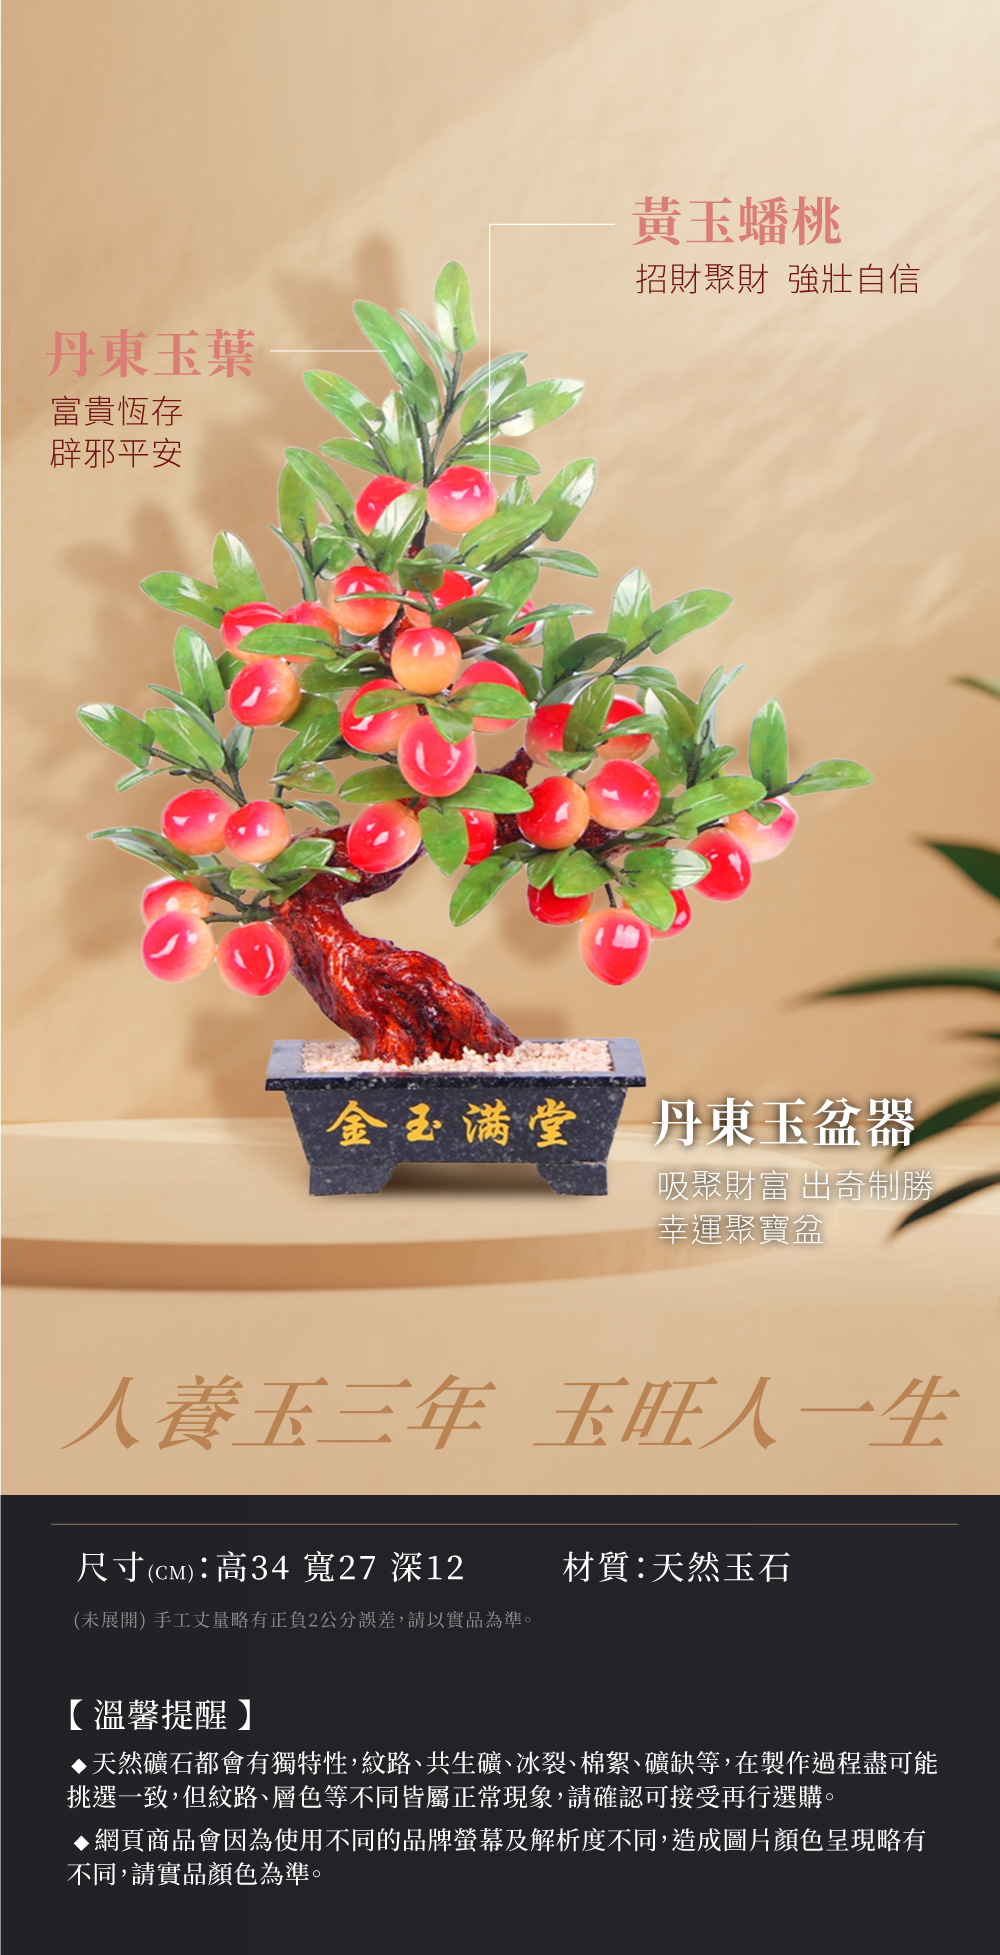 開運NOW-金玉滿堂玉石盆栽擺飾 產品說明